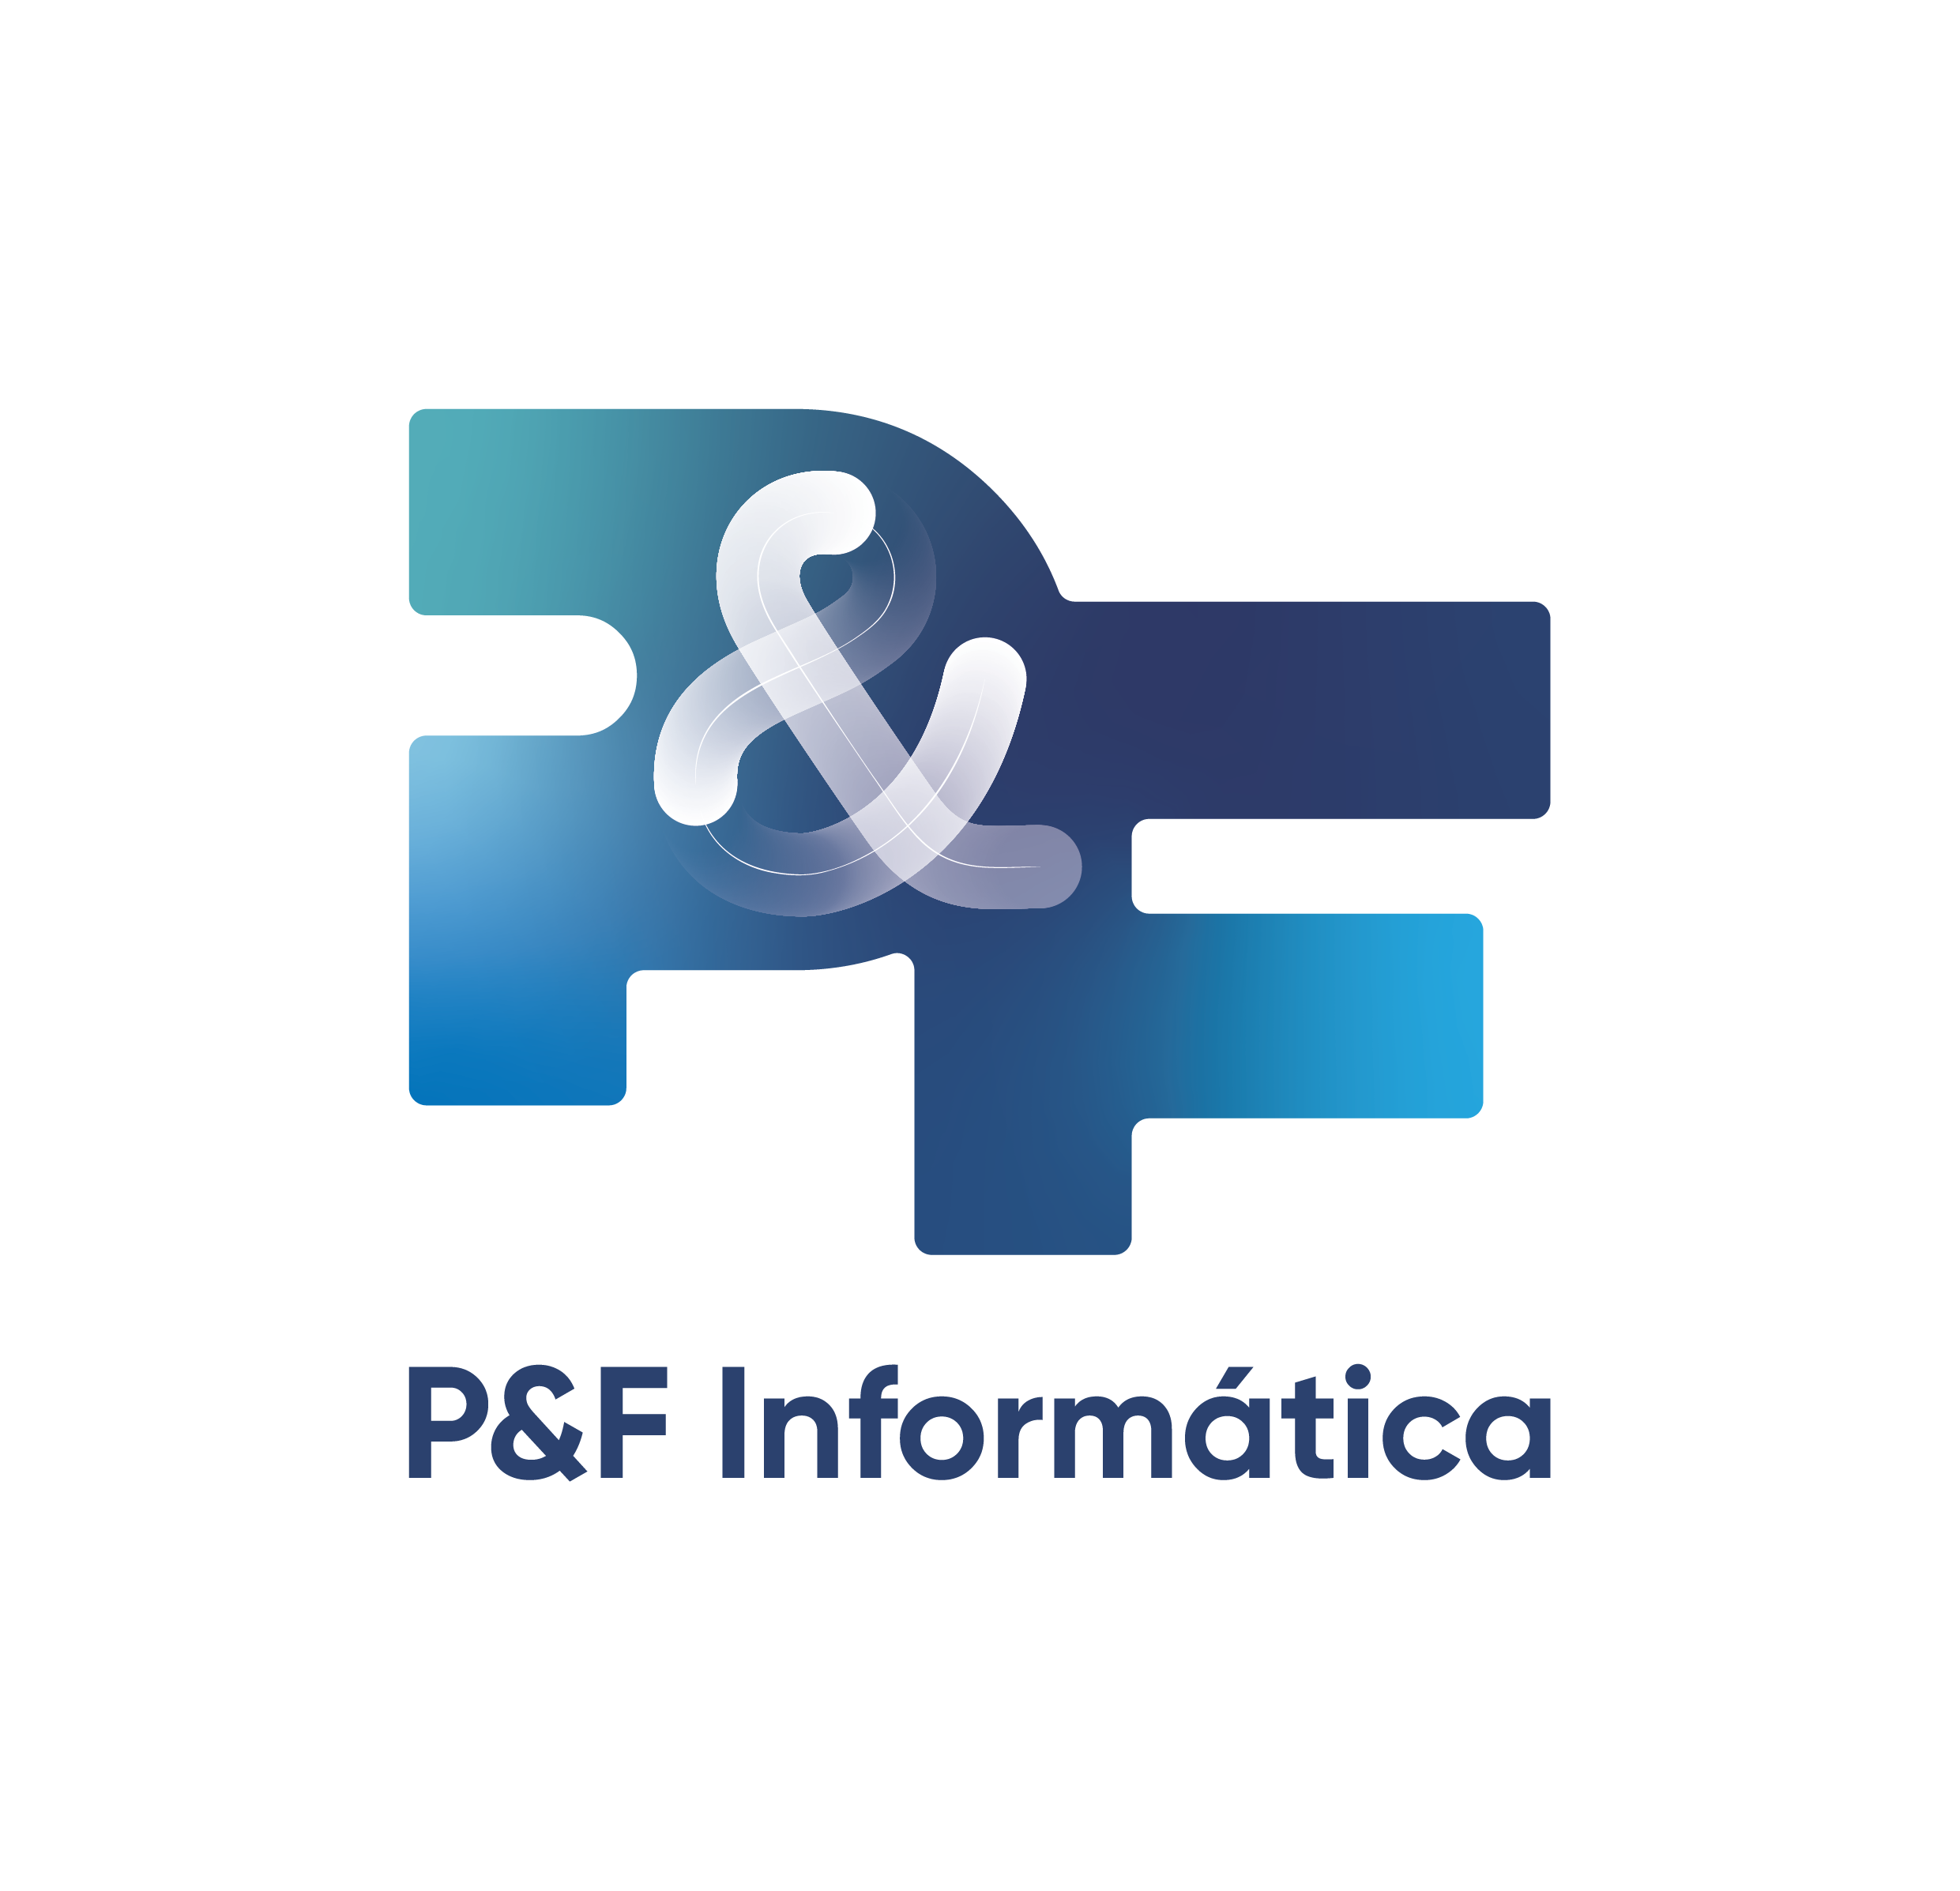 PeF Informatica_Vertical_1